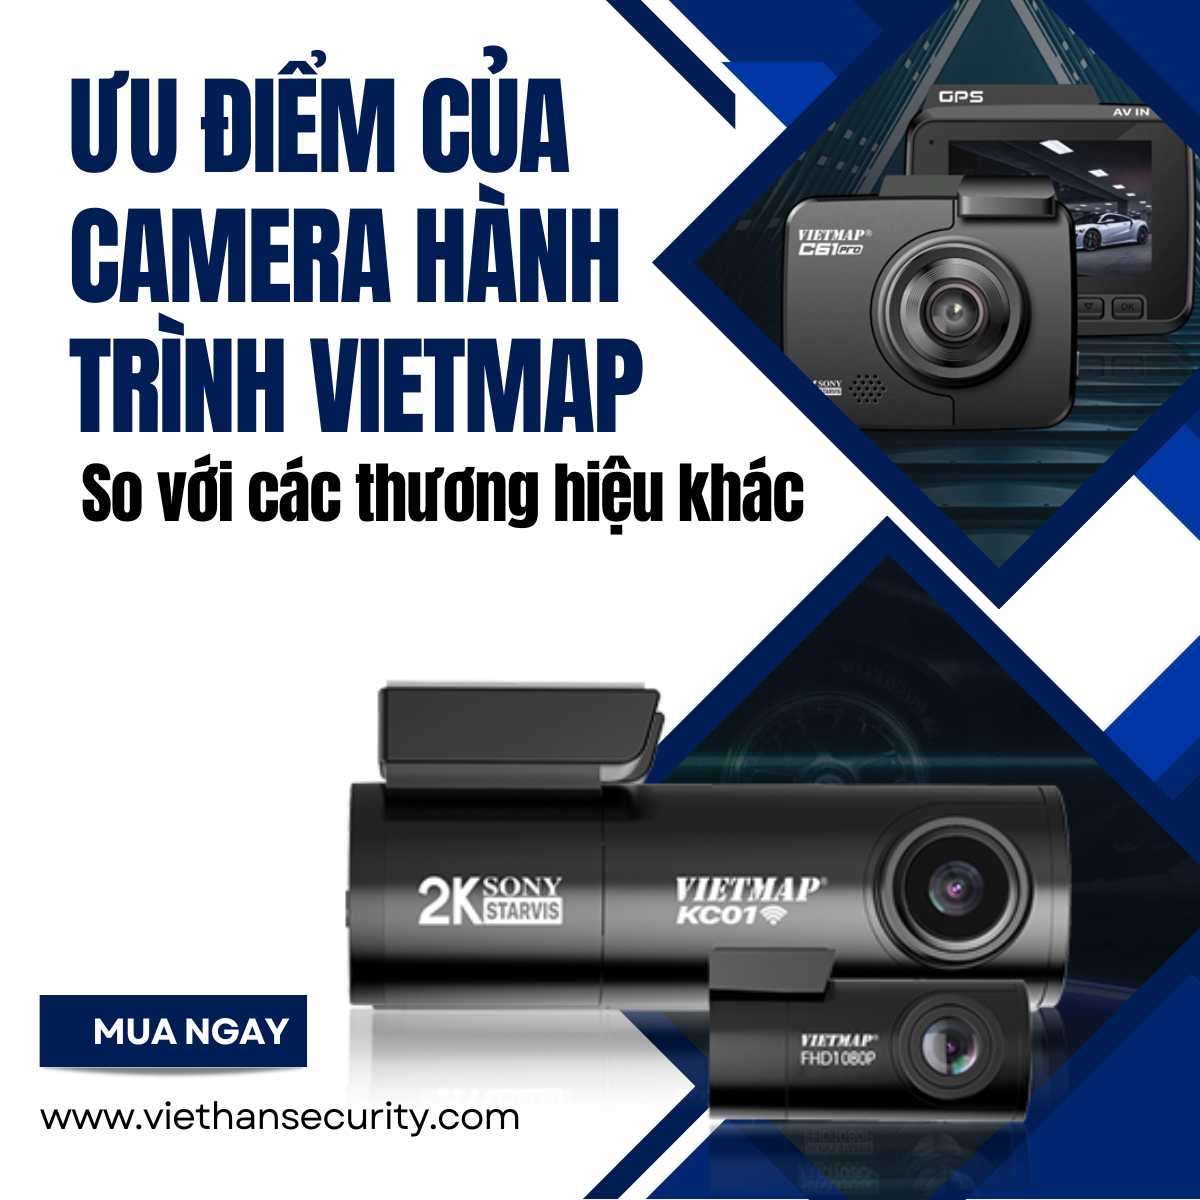 Điểm danh những ưu điểm của camera hành trình Vietmap so với các thương hiệu khác